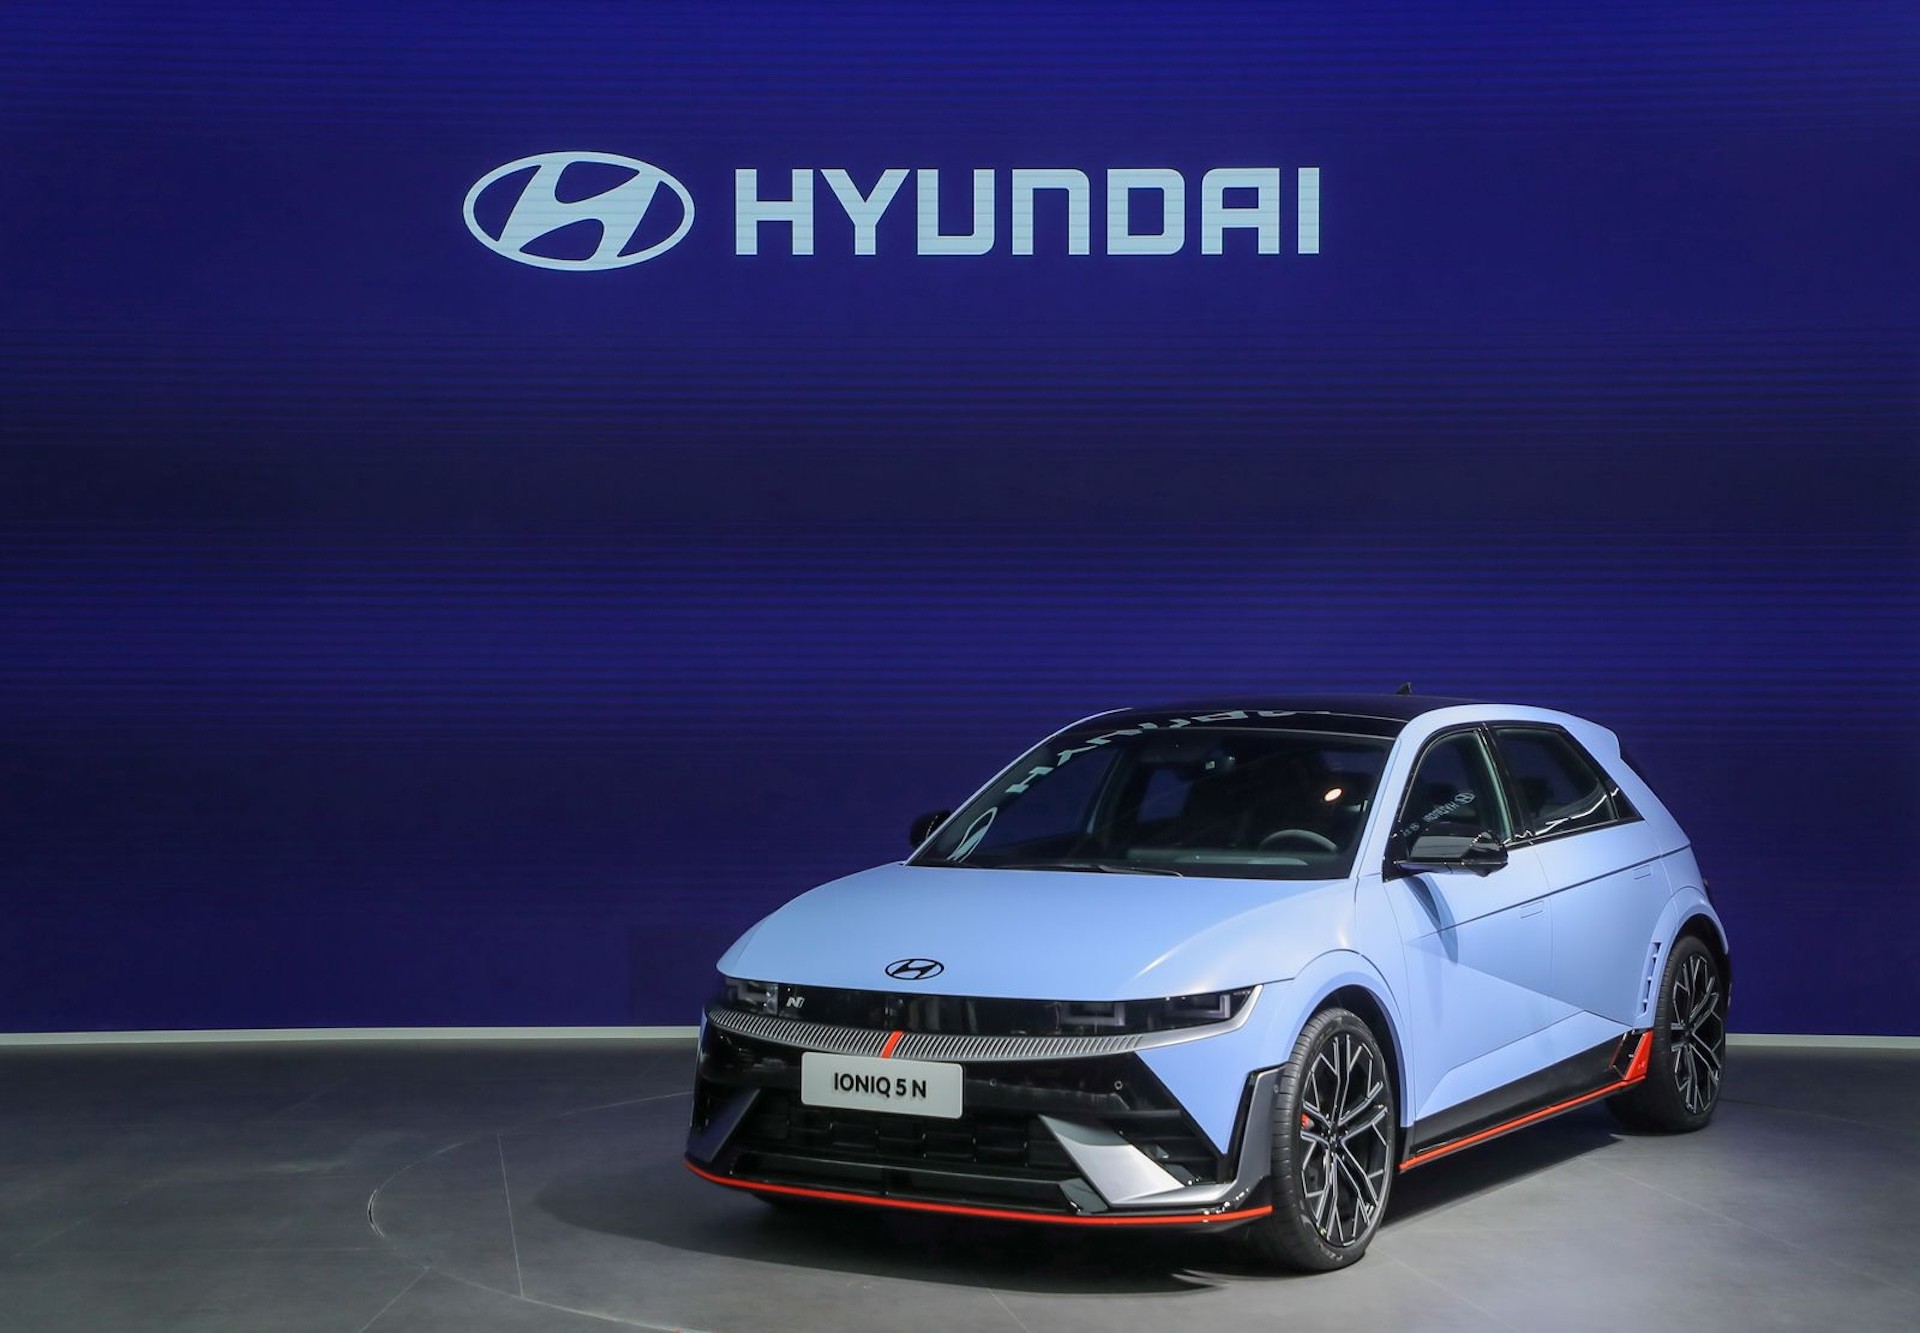 Η Hyundai Motor εντυπωσιάζει στην Έκθεση Αυτοκινήτου του Πεκίνου, ανοίγοντας το δρόμο για περαιτέρω επέκταση στην Κίνα